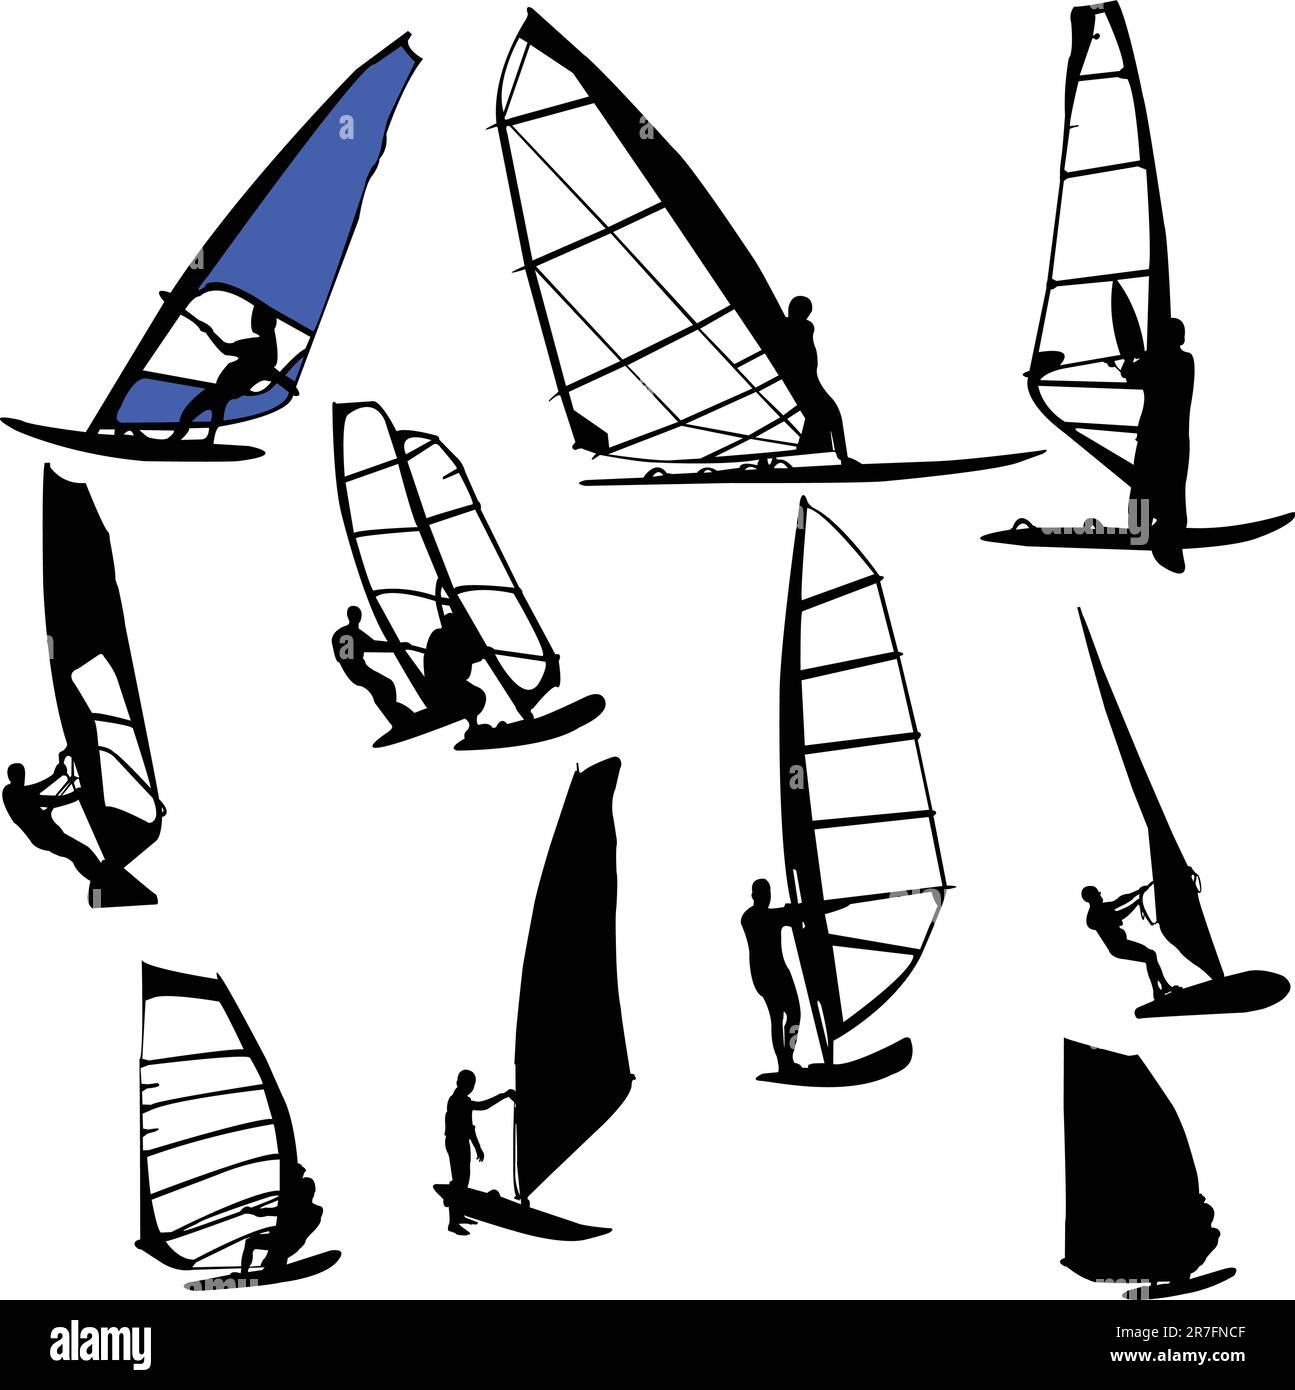 collezione windsurf - vector Illustrazione Vettoriale